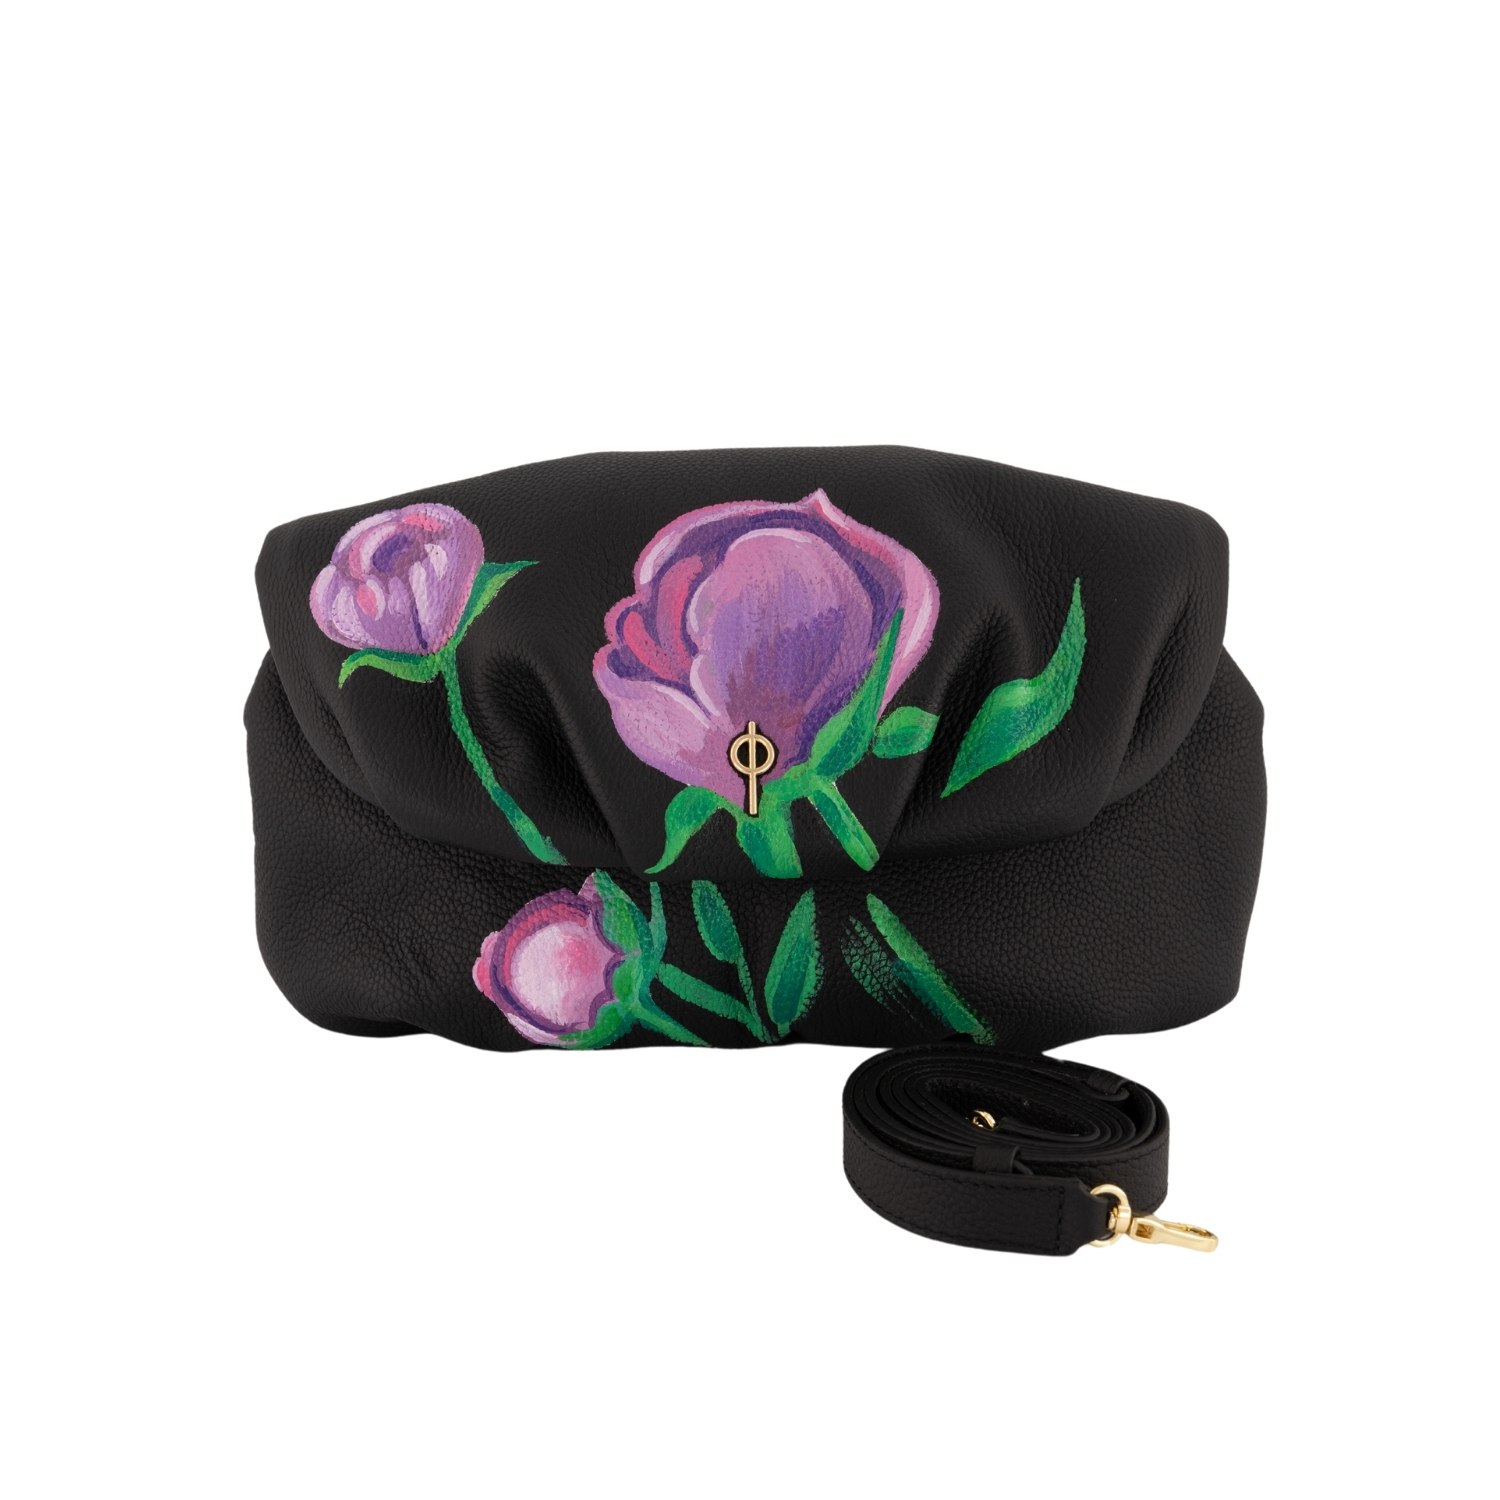 Otrera Women's Floral Leda Leather Clutch Bag - Black In Burgundy